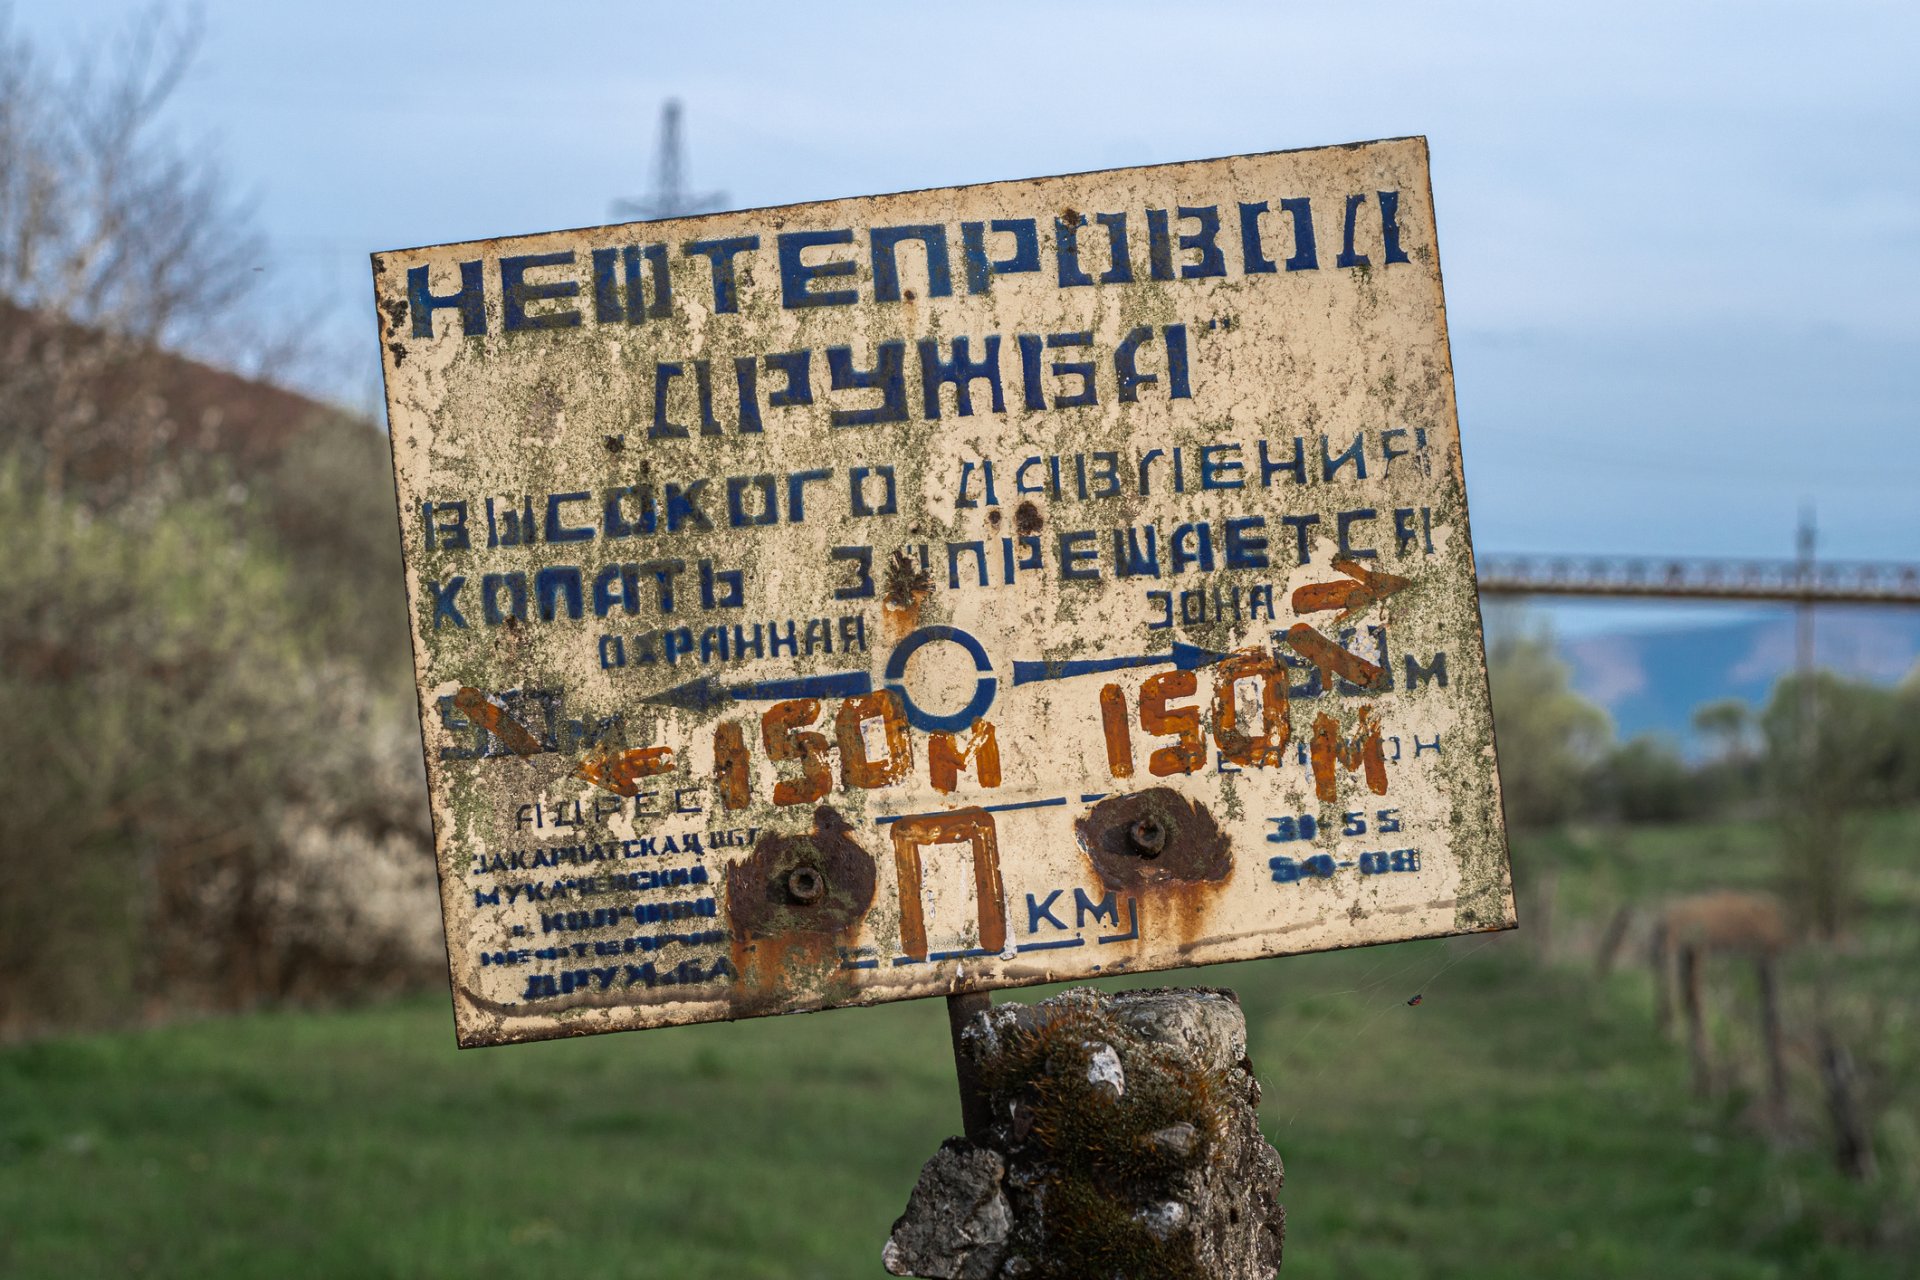 Стара изтъркана табела с надпис "Нефтопровод Дружба" на руски - днес на украинска територия